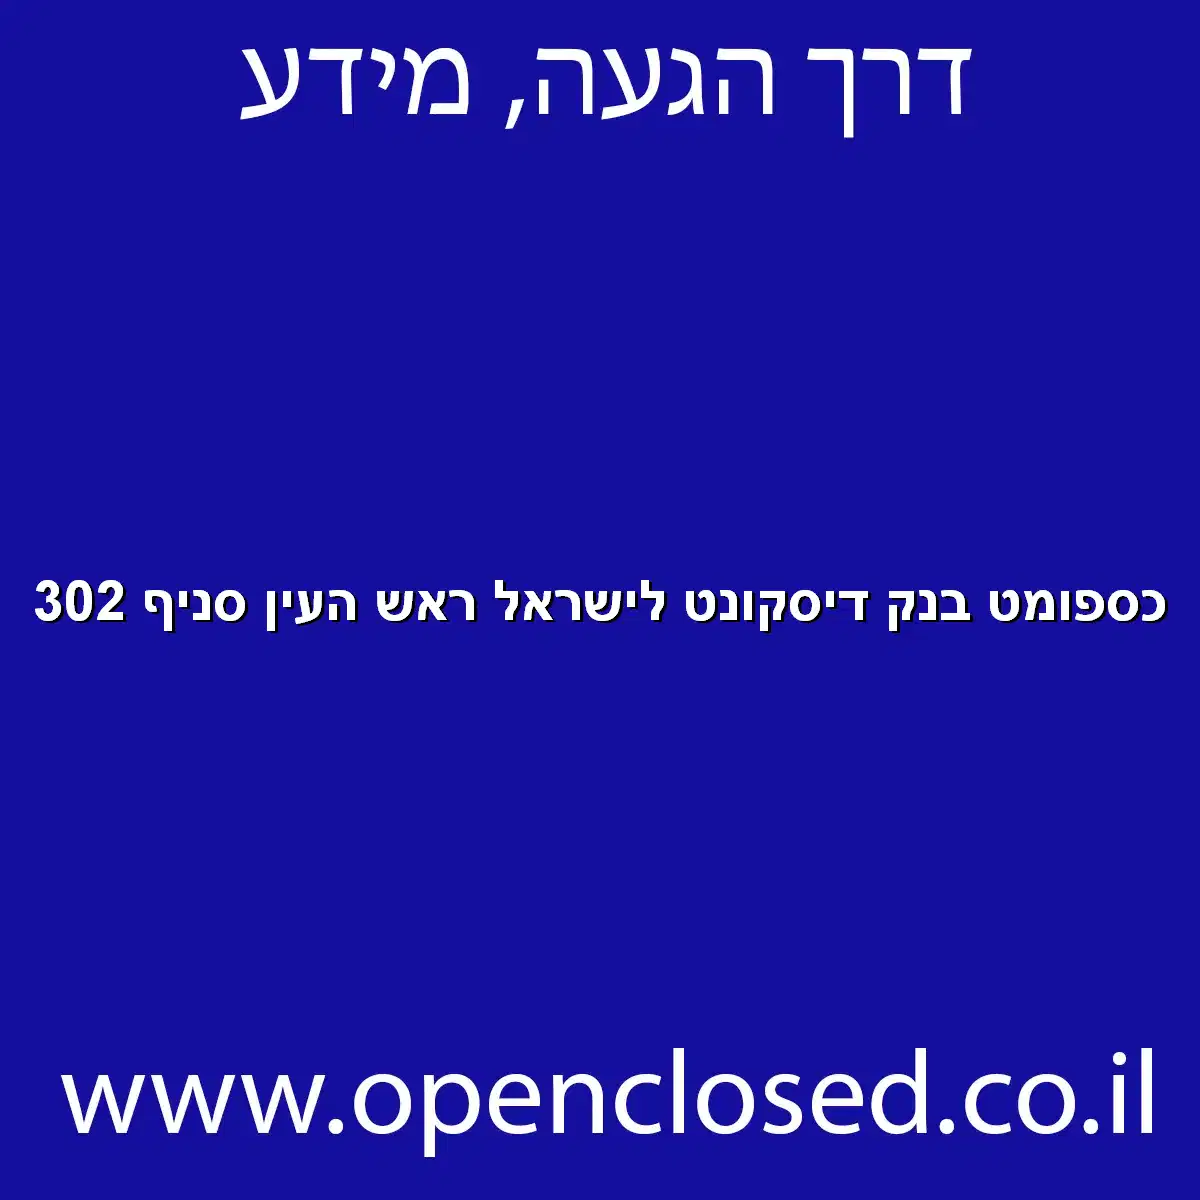 כספומט בנק דיסקונט לישראל ראש העין סניף 302